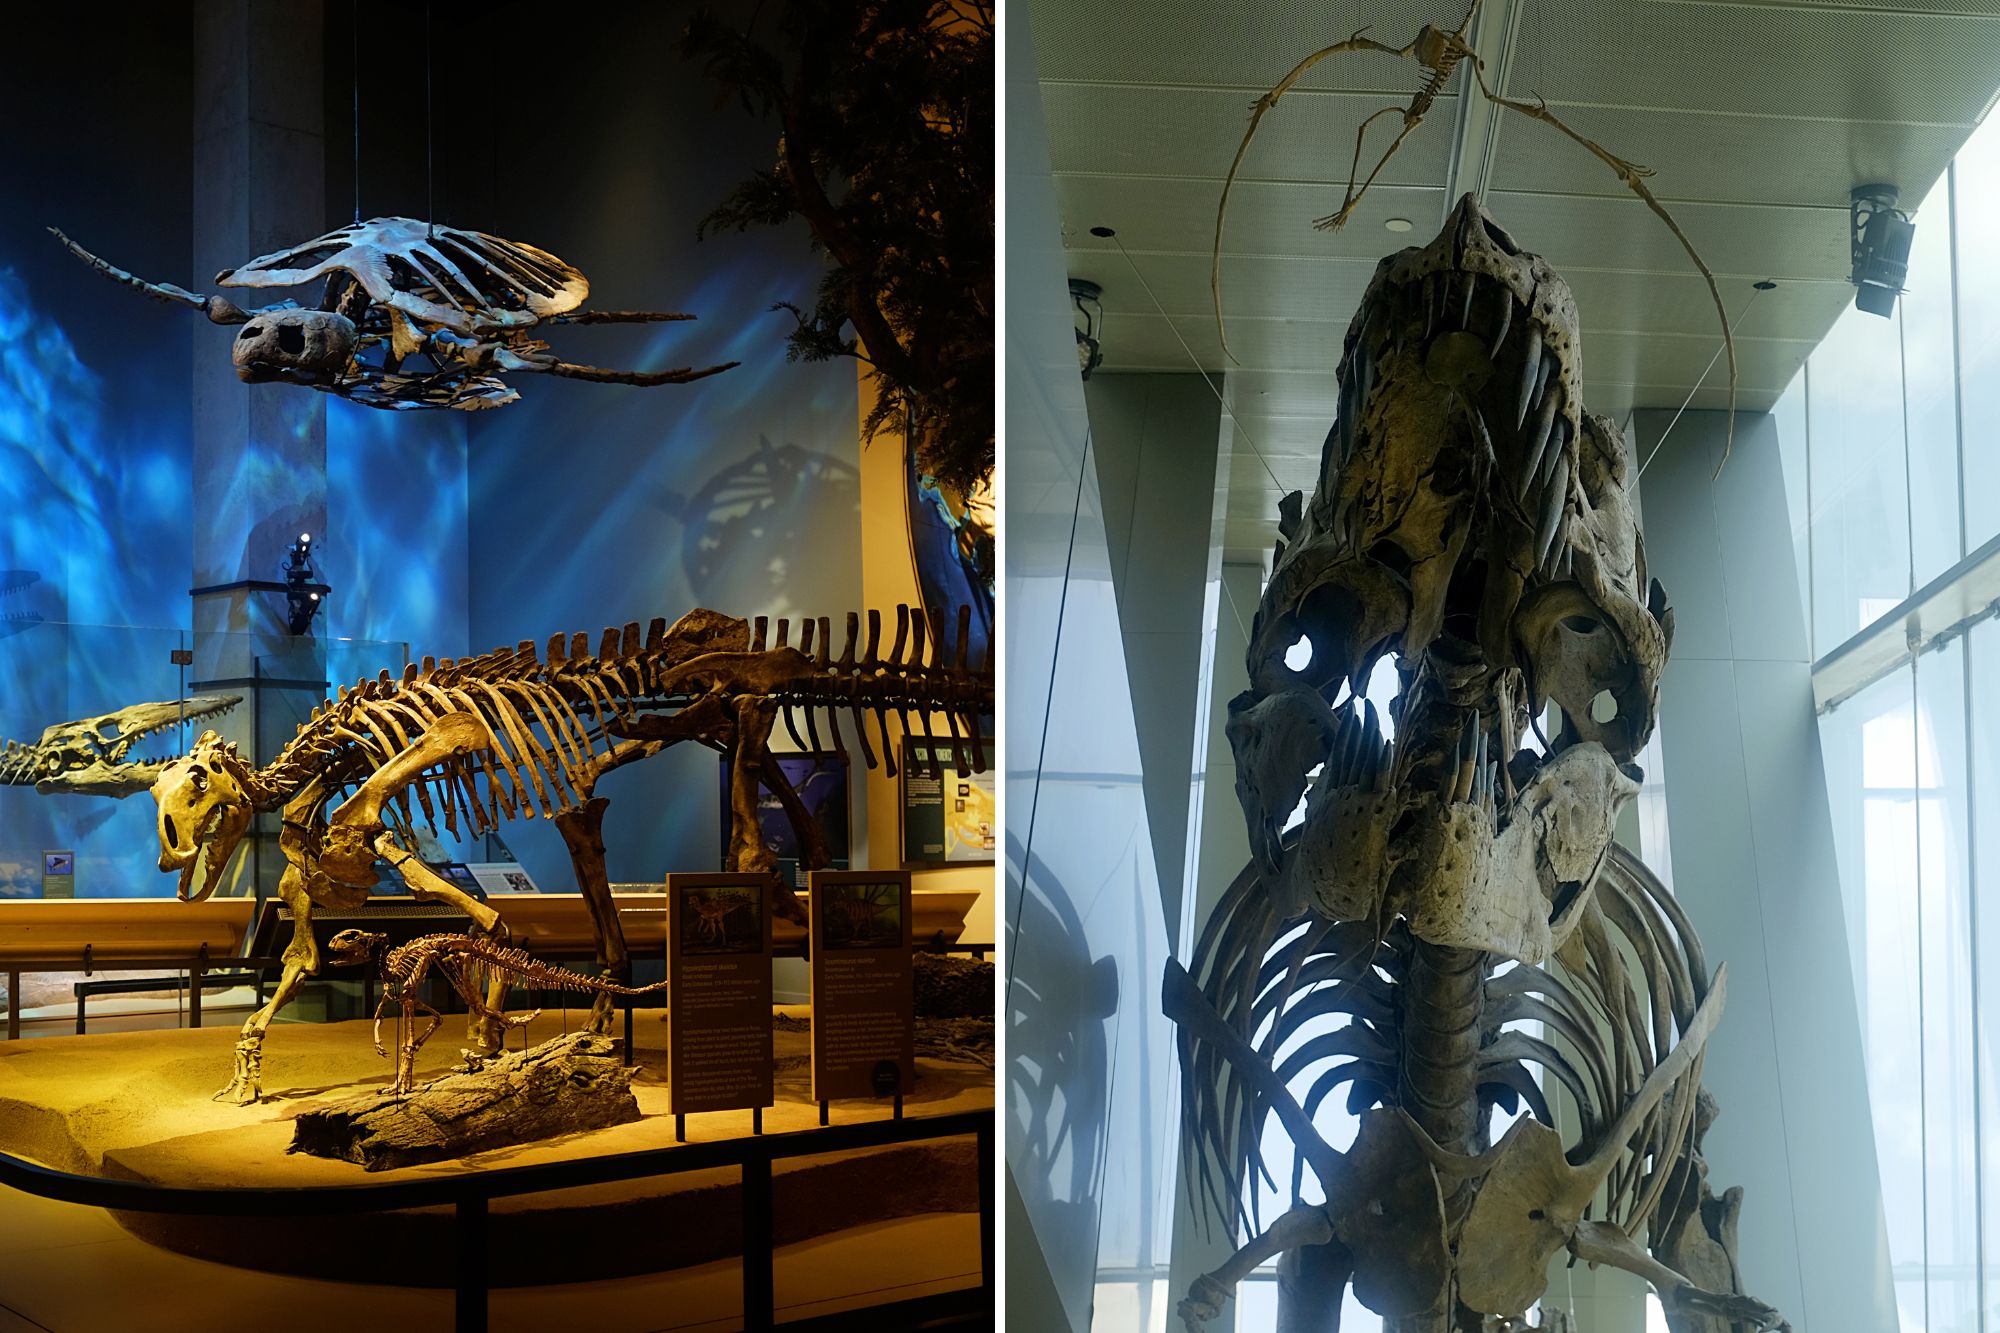 Dinosaur bones at the Perot Museum